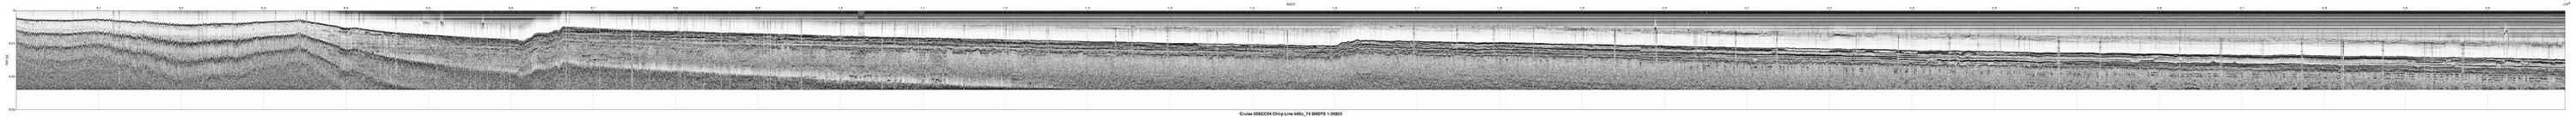 00SCC04 b00c_74 seismic profile image